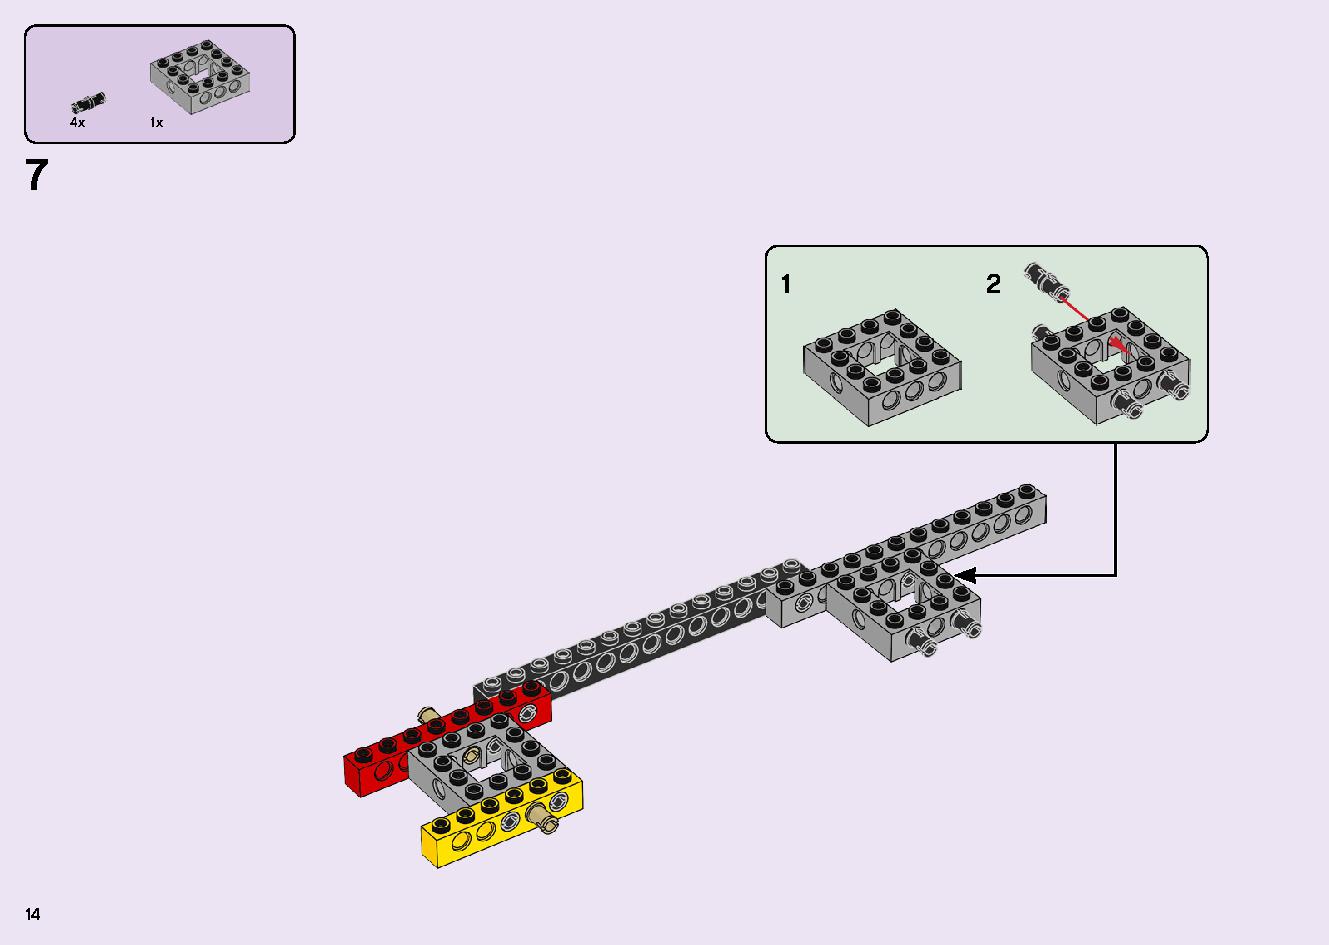 フレンズのうきうきハッピー・バス 41395 レゴの商品情報 レゴの説明書・組立方法 14 page